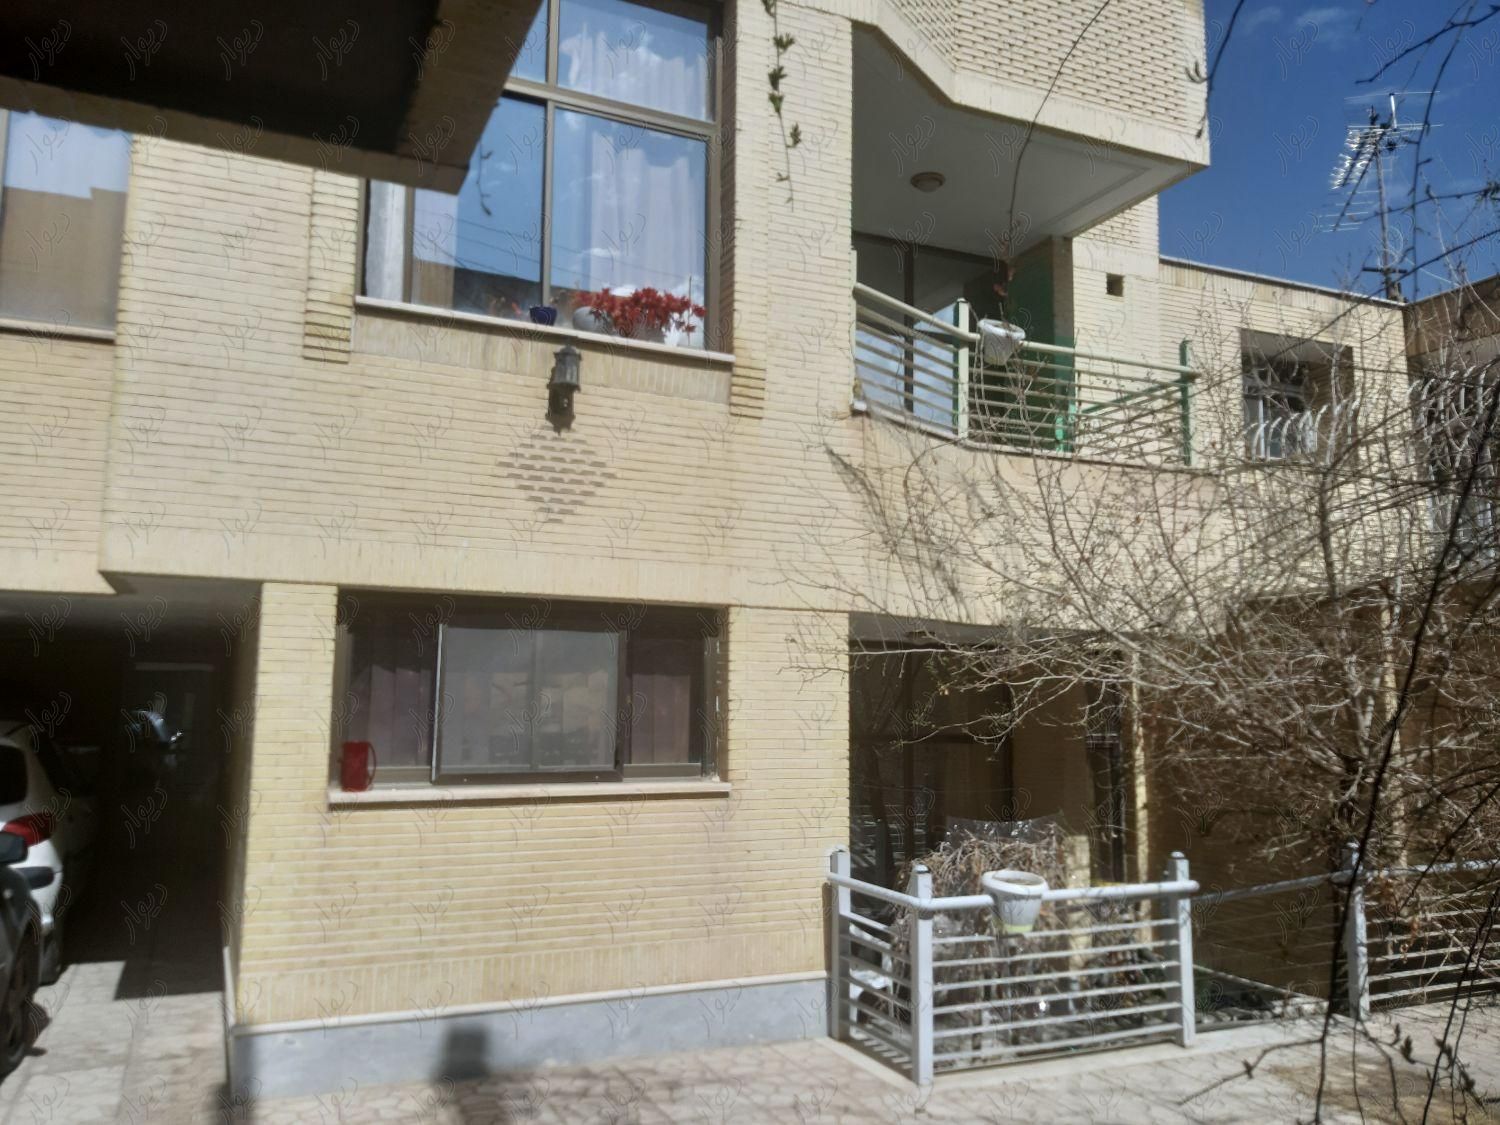 منزل ویلایی دو طبقه با زیرزمین سوییت شهرک فاضل|فروش خانه و ویلا|اصفهان, شهید رجائی|دیوار